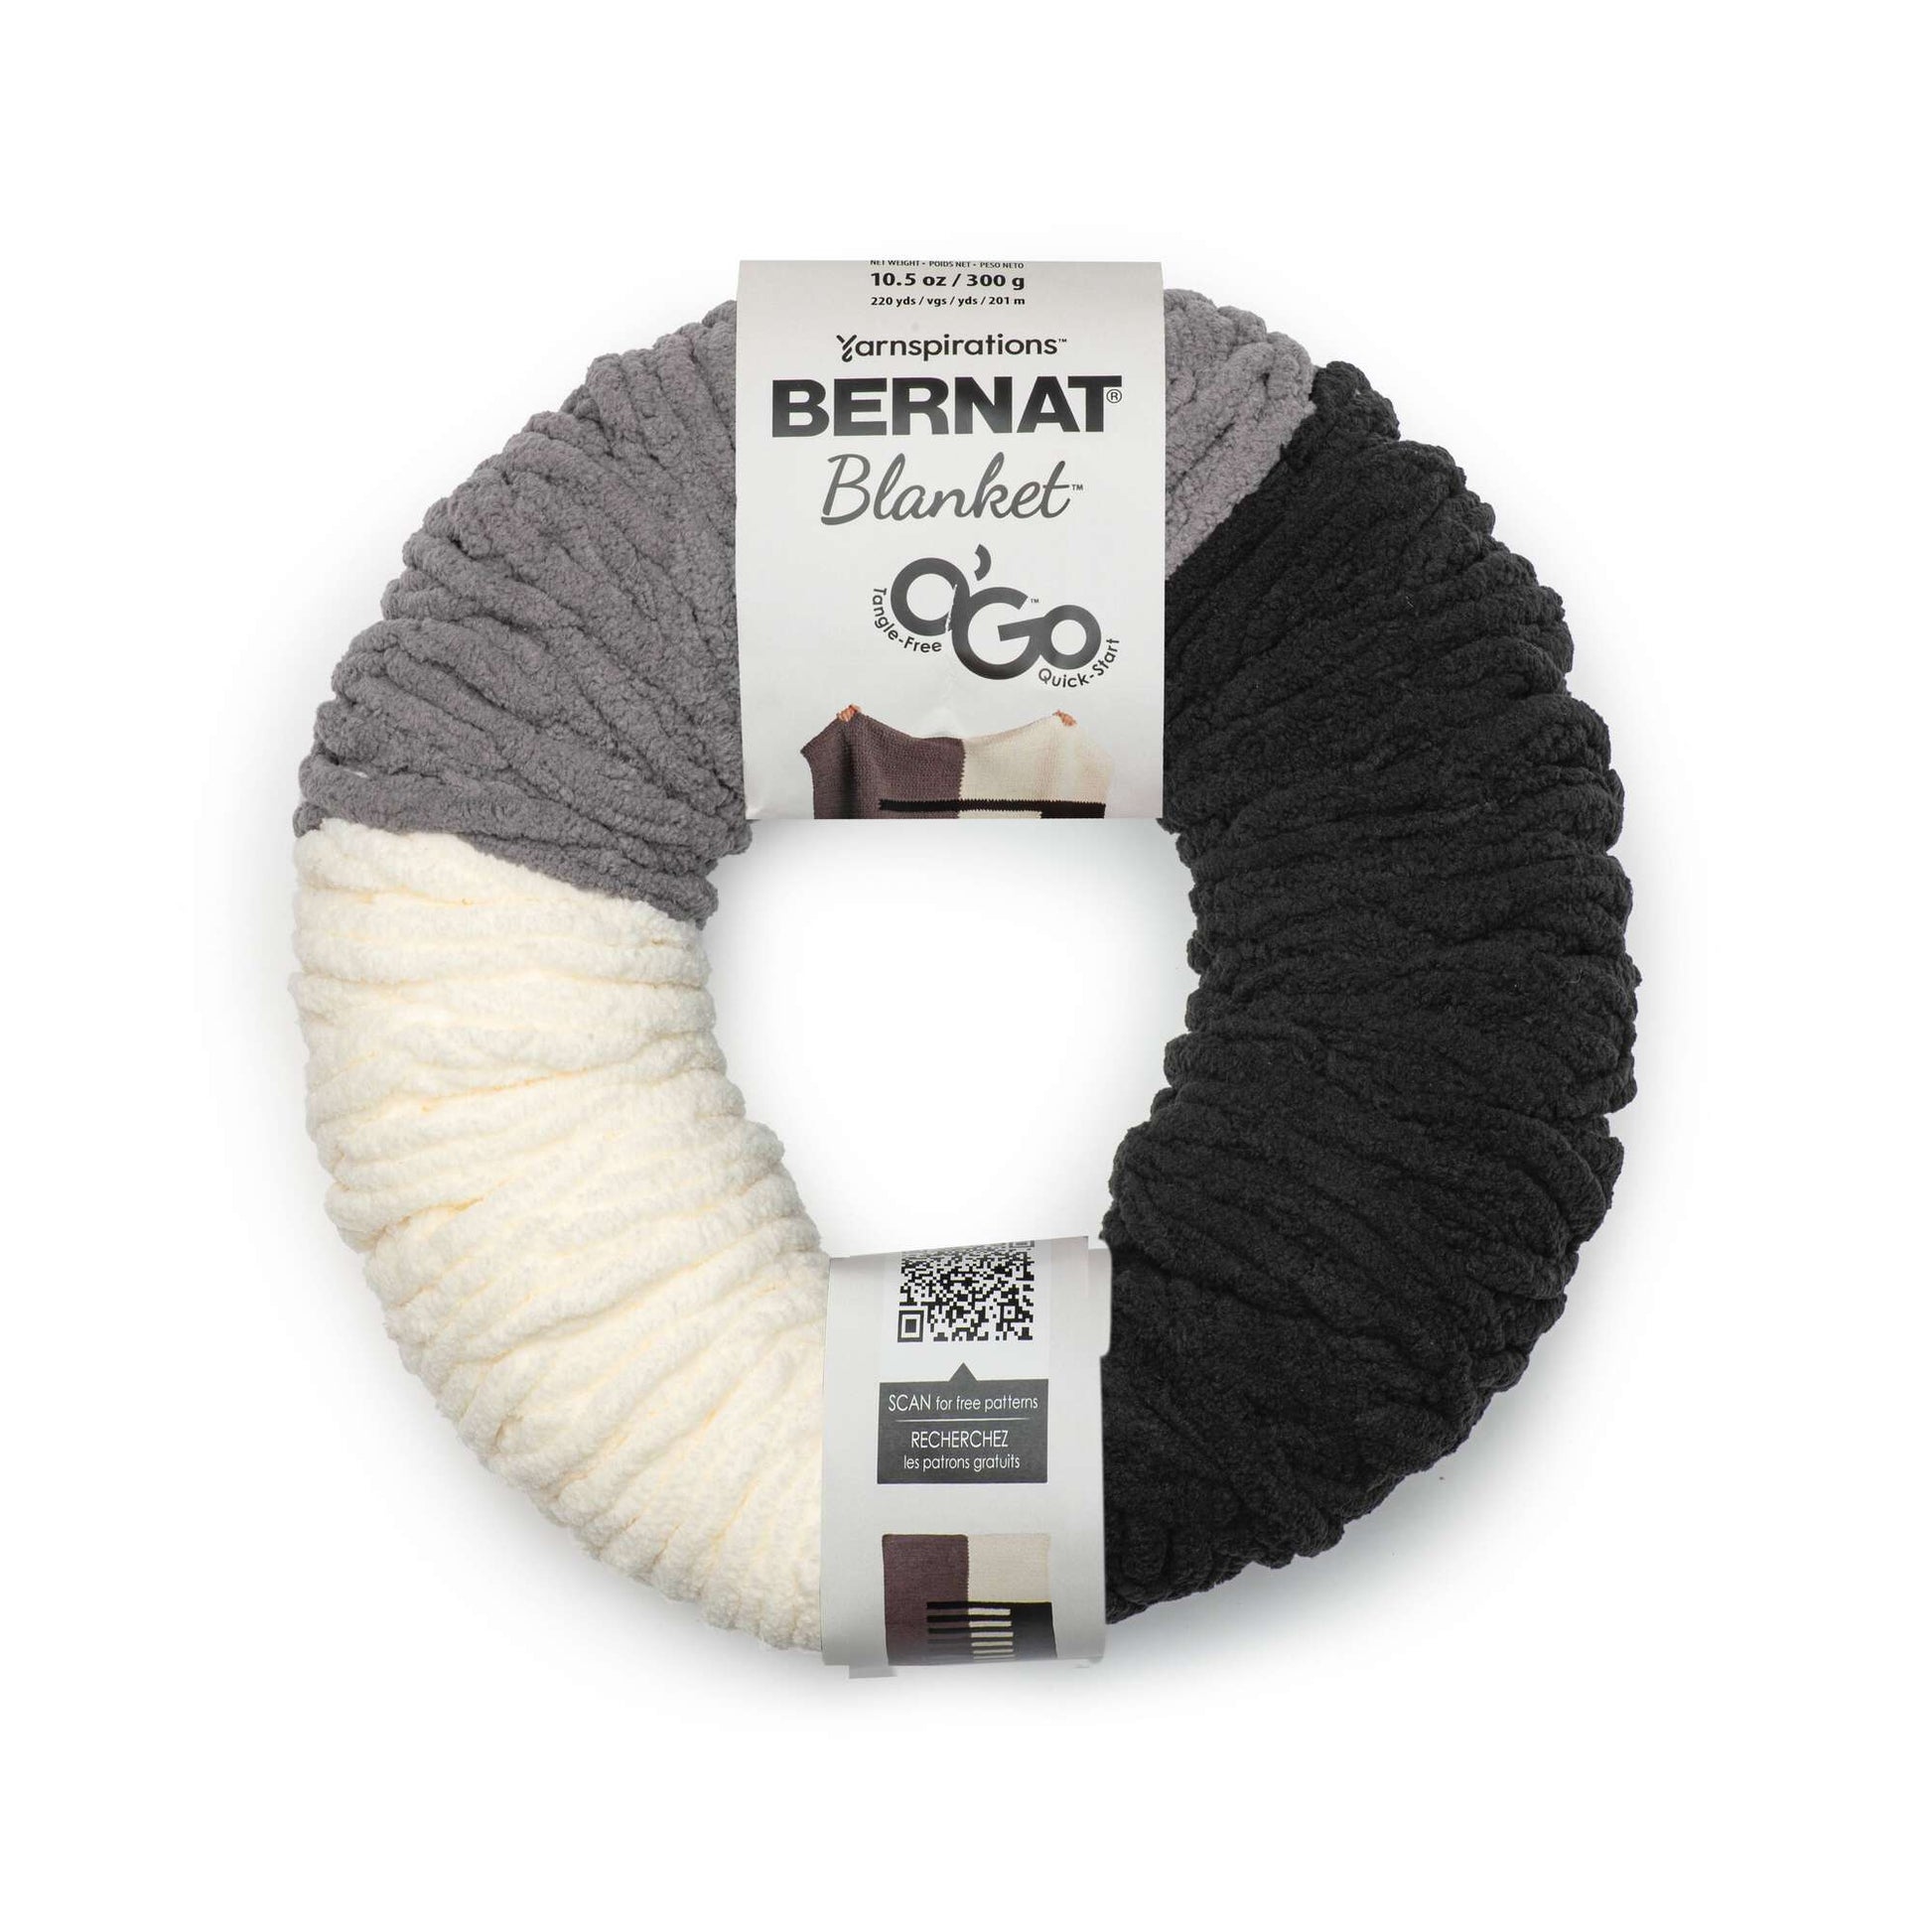 Bernat Blanket O'Go Copper Yarn - 2 Pack of 300g/10.5oz - Polyester - 6  Super Bulky - Knitting/Crochet